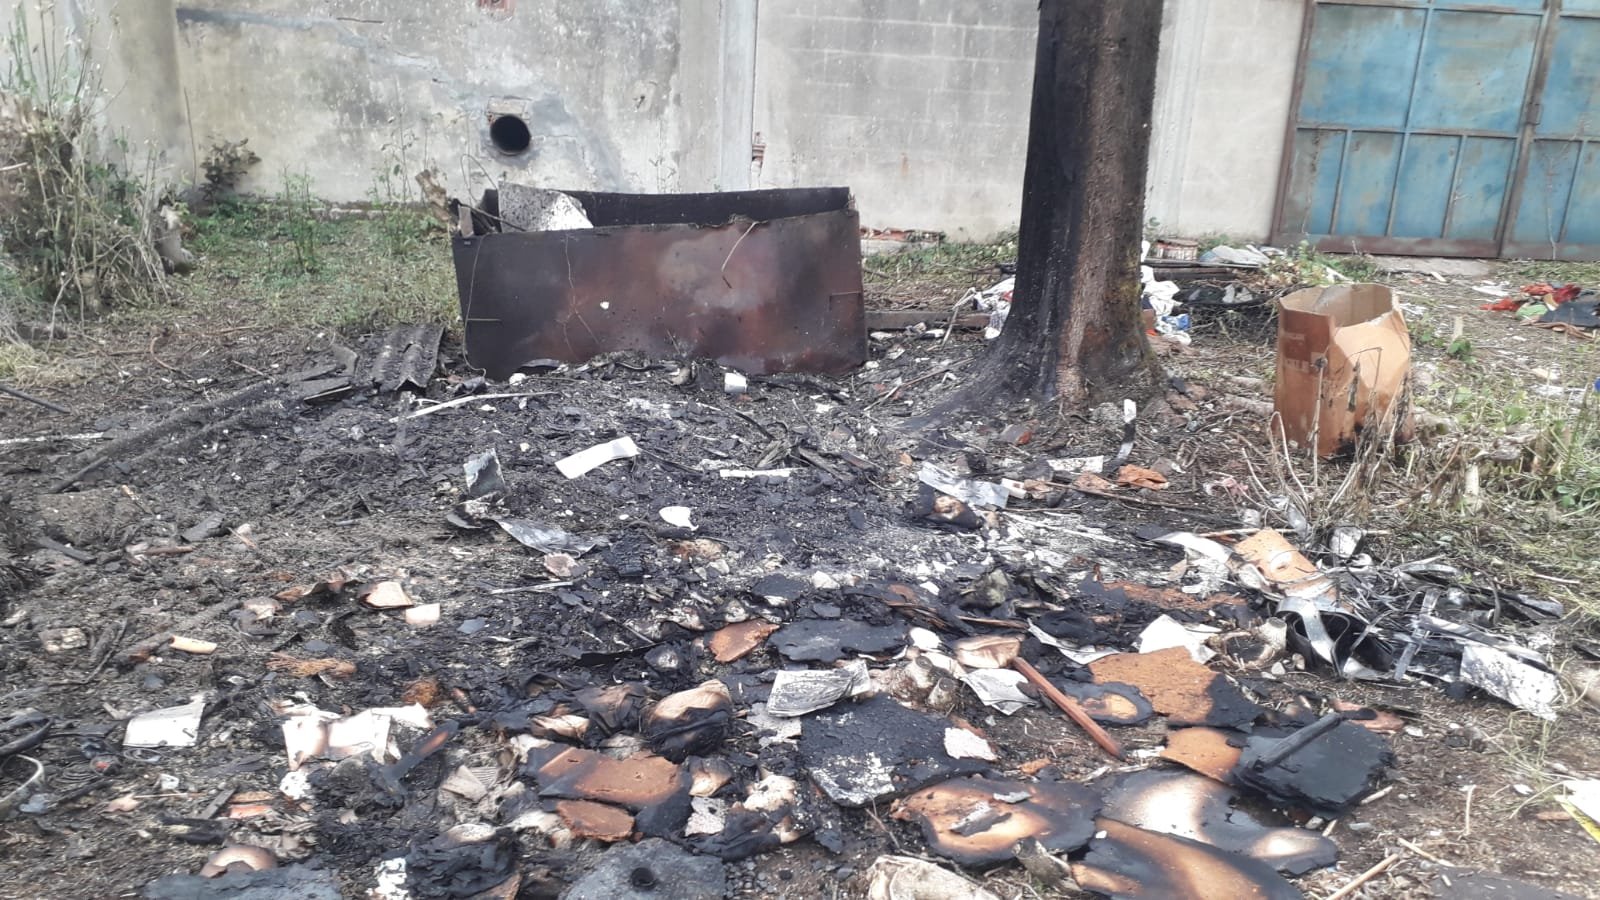 Brucia materiale inquinante in un fabbricato in disuso a Tortona: colto il flagrante